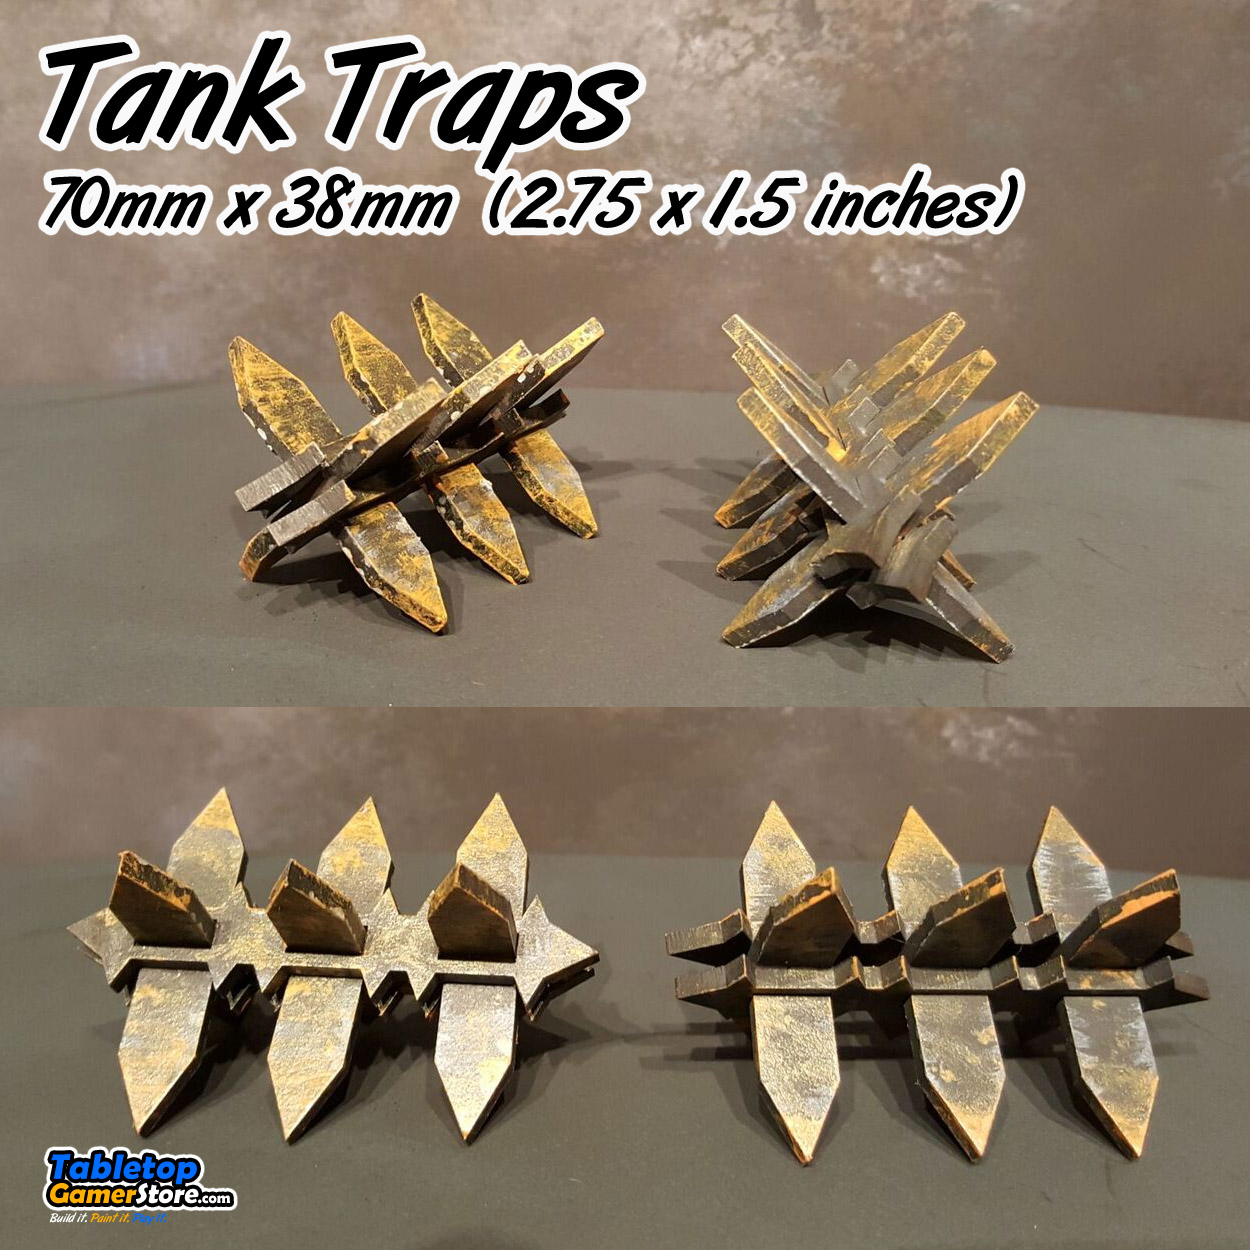 Tank Traps